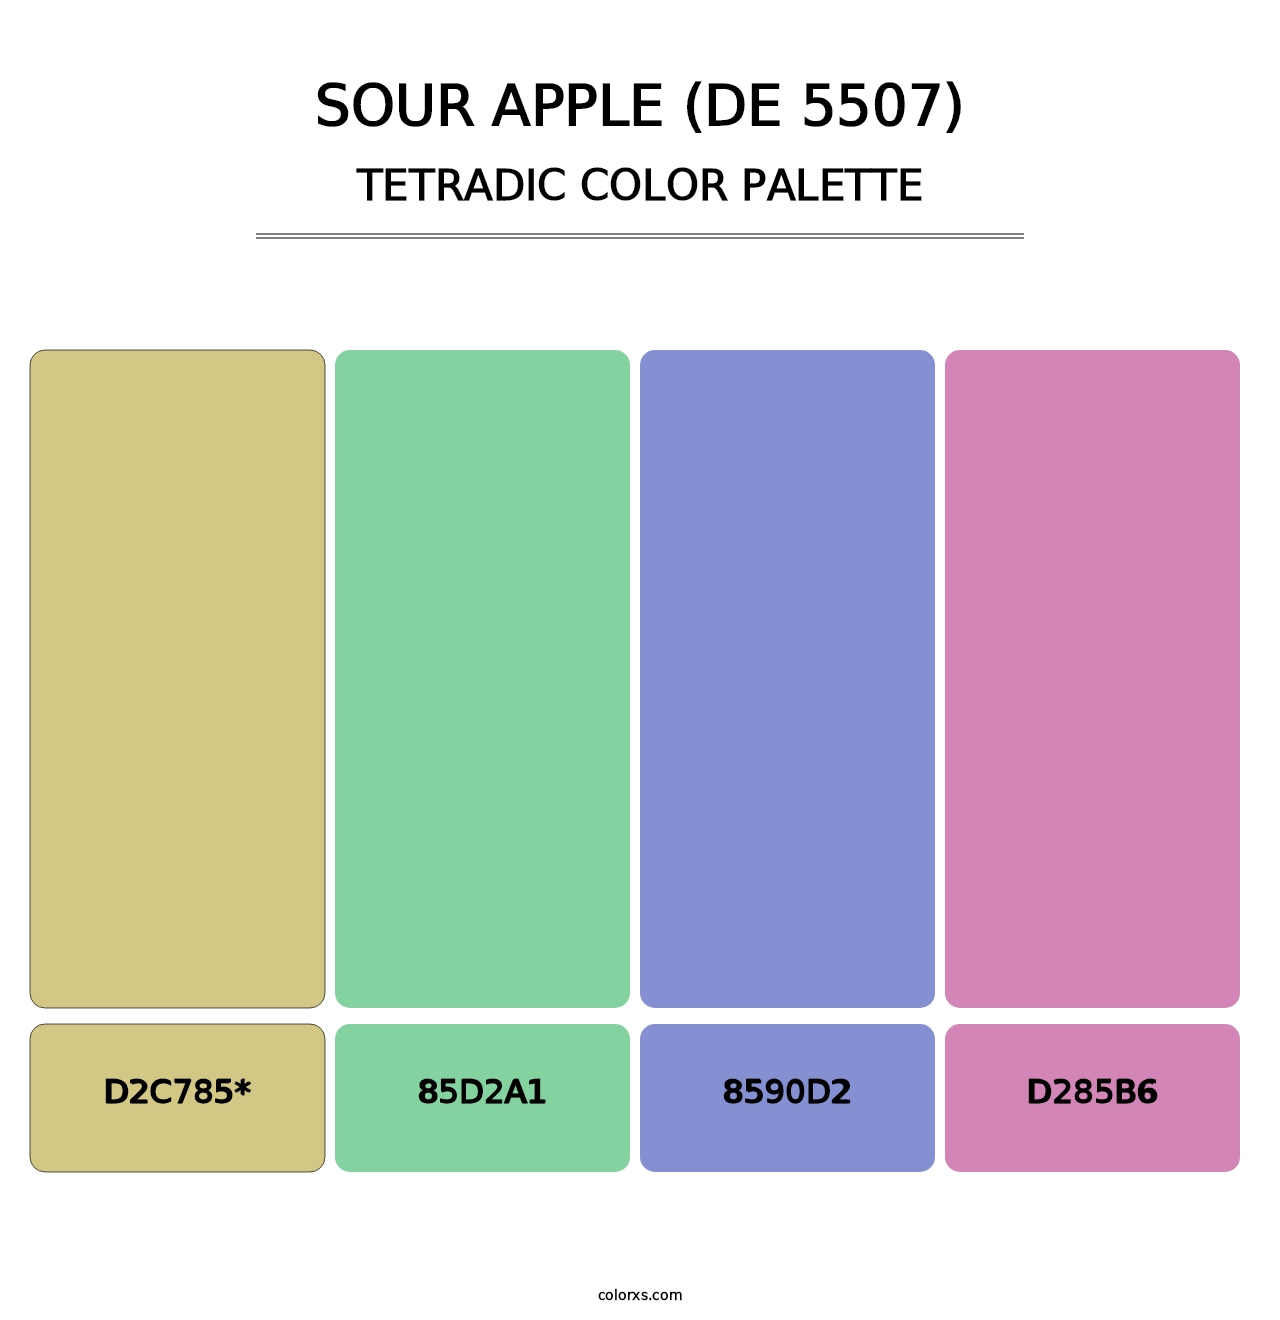 Sour Apple (DE 5507) - Tetradic Color Palette